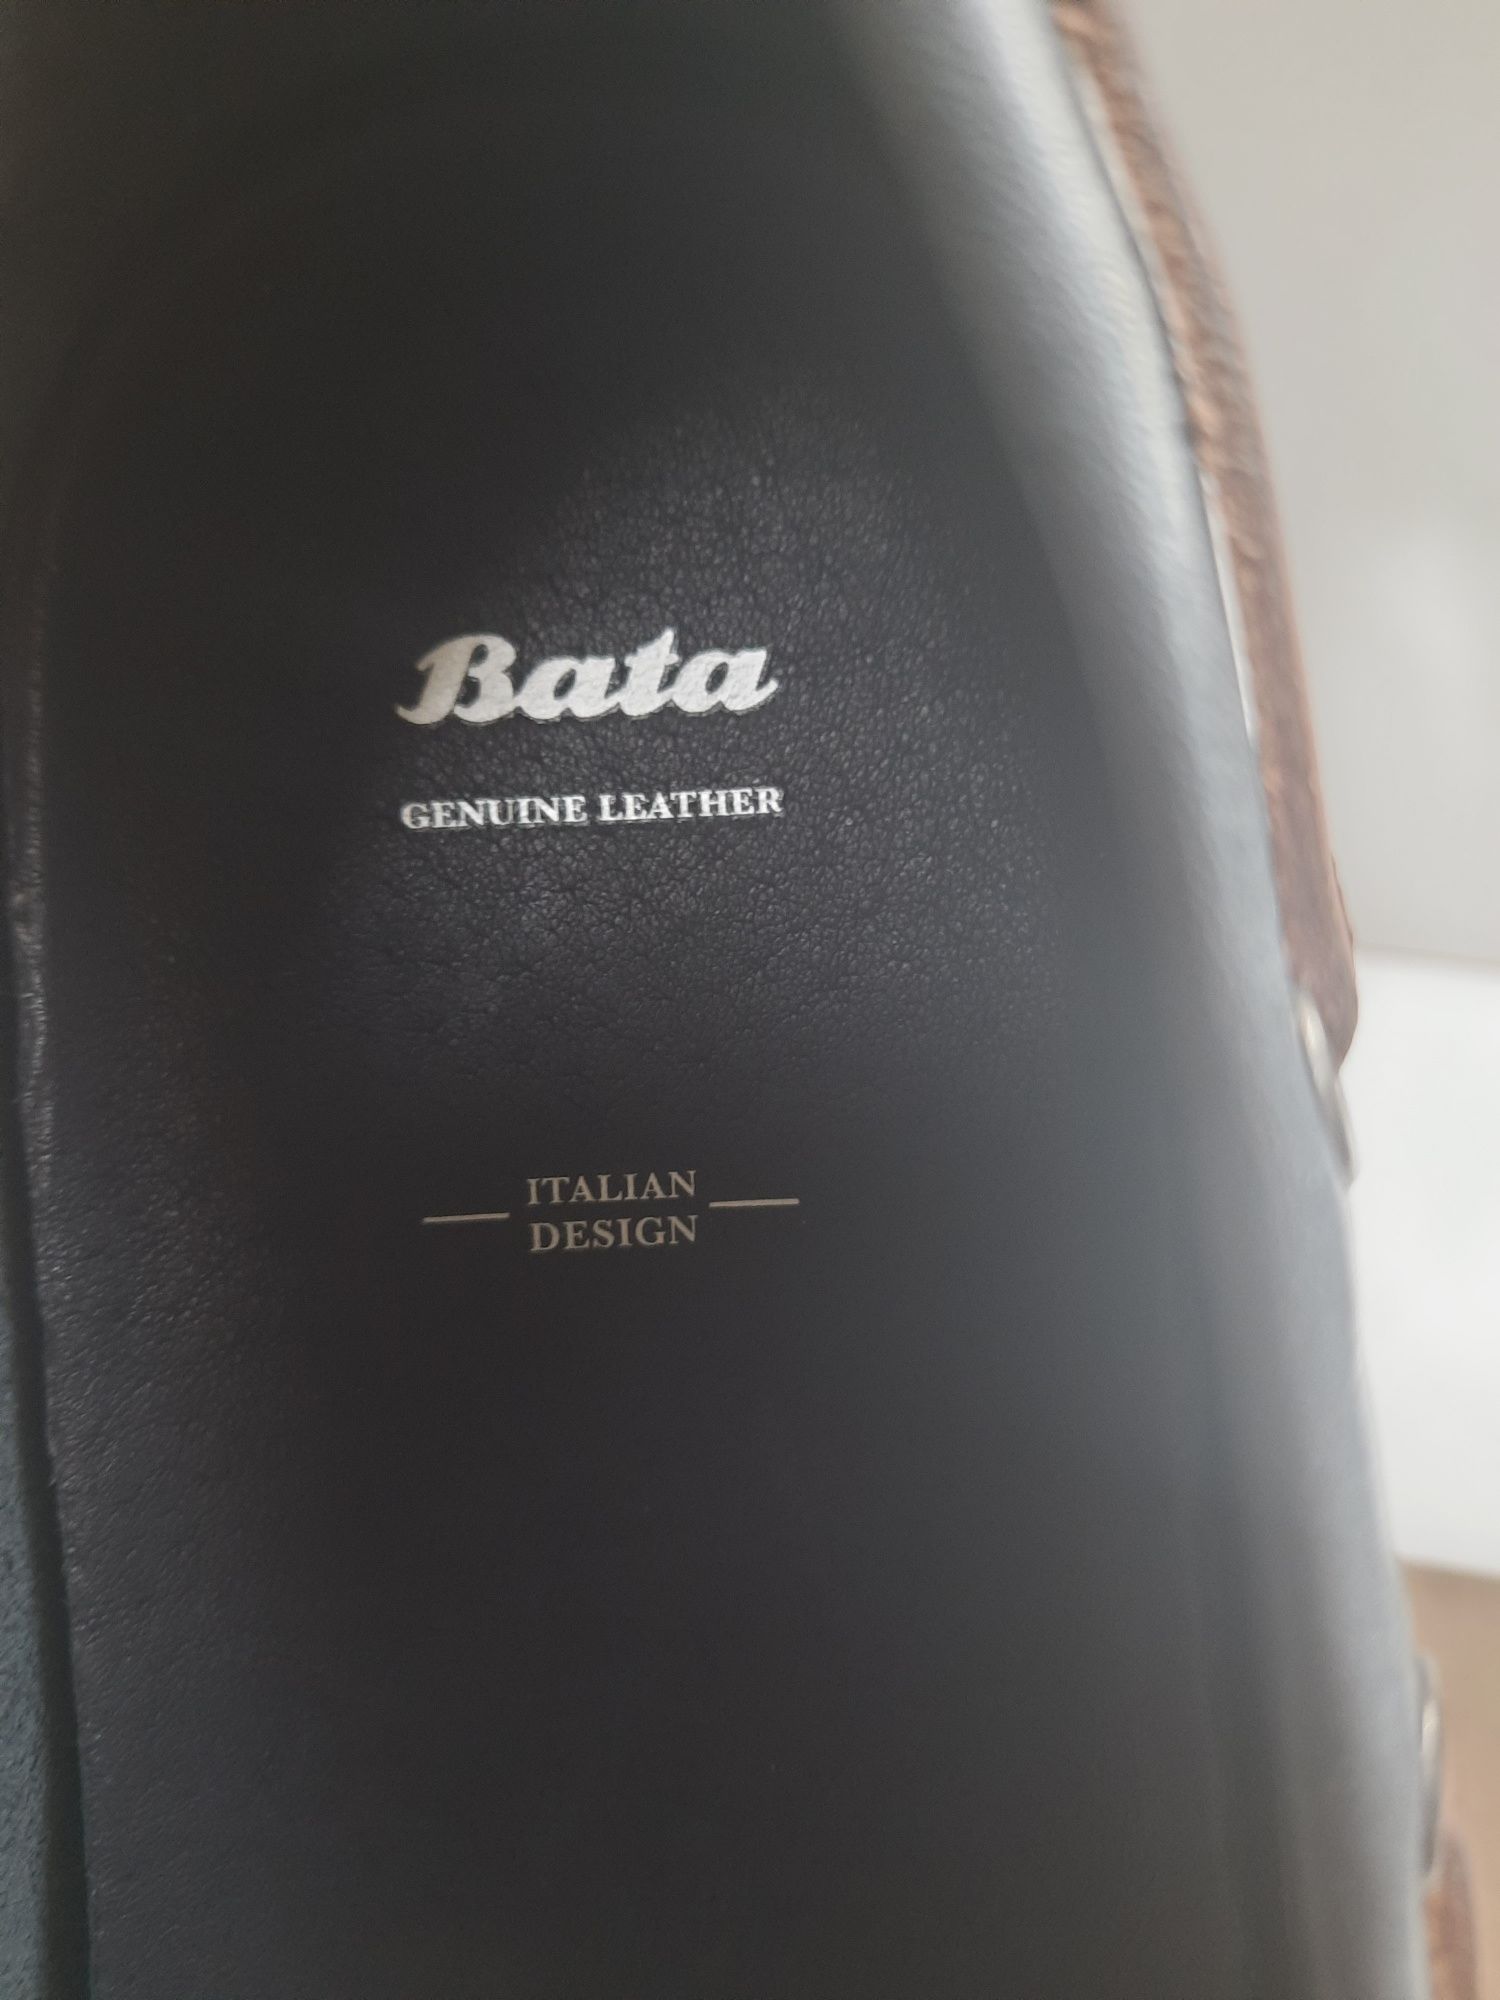 -40% Мокасины "BATA", производства Италии 44-й размер